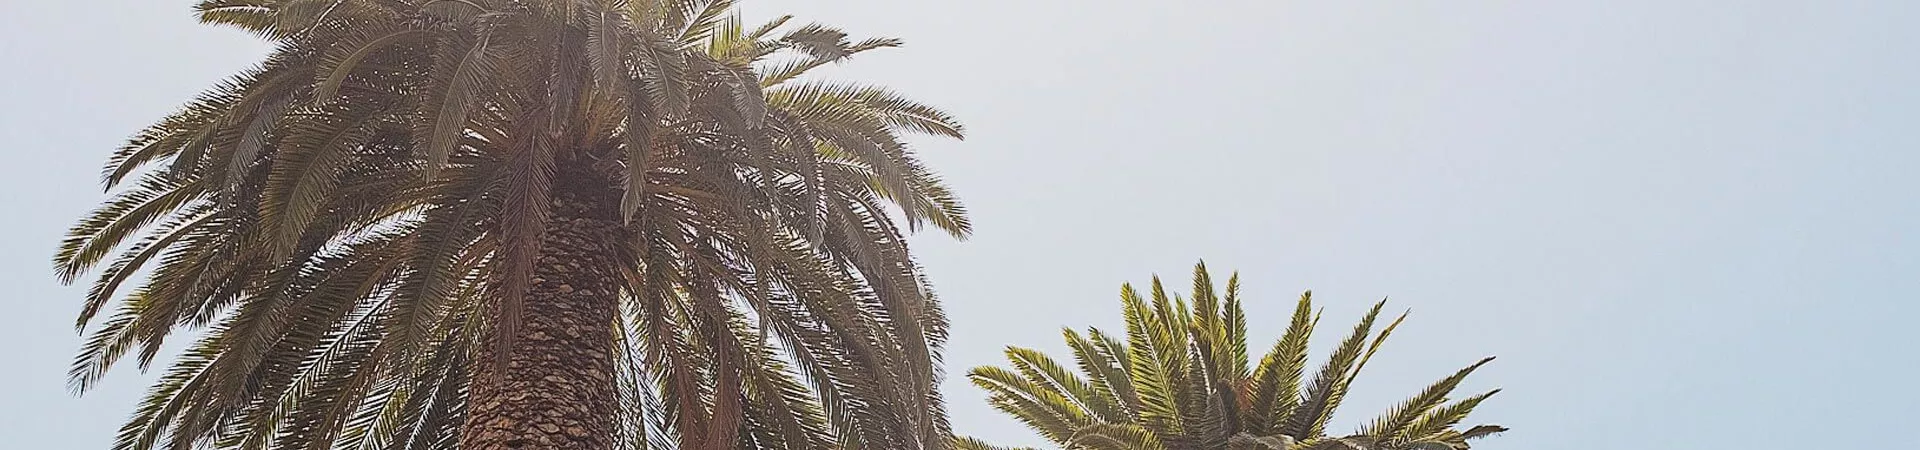 Contiki Crawl San Diego palms